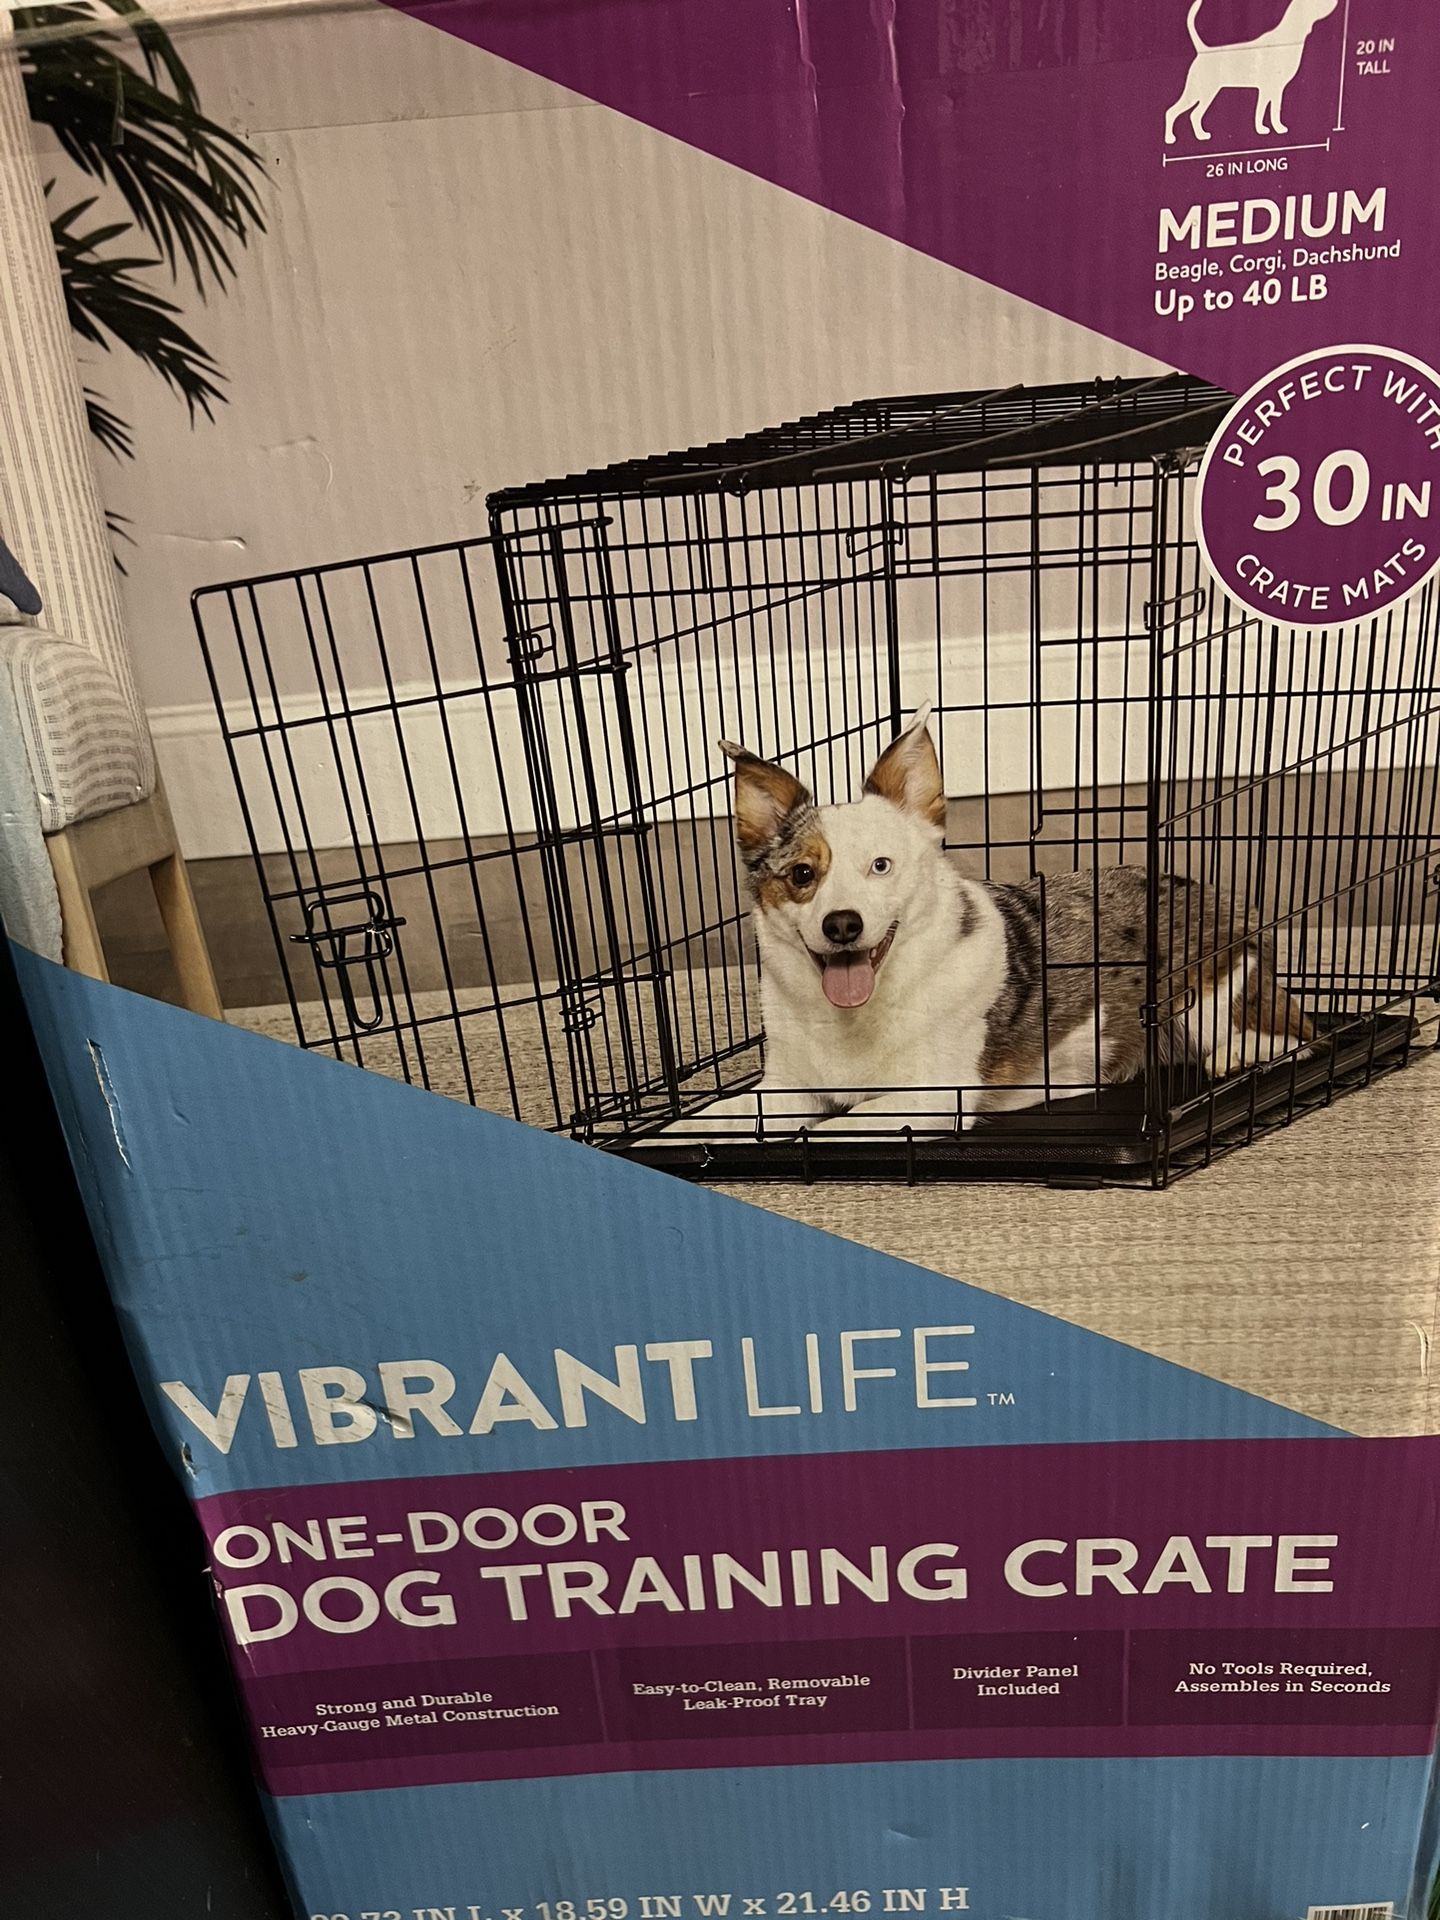 One-Door Dog Training Crate